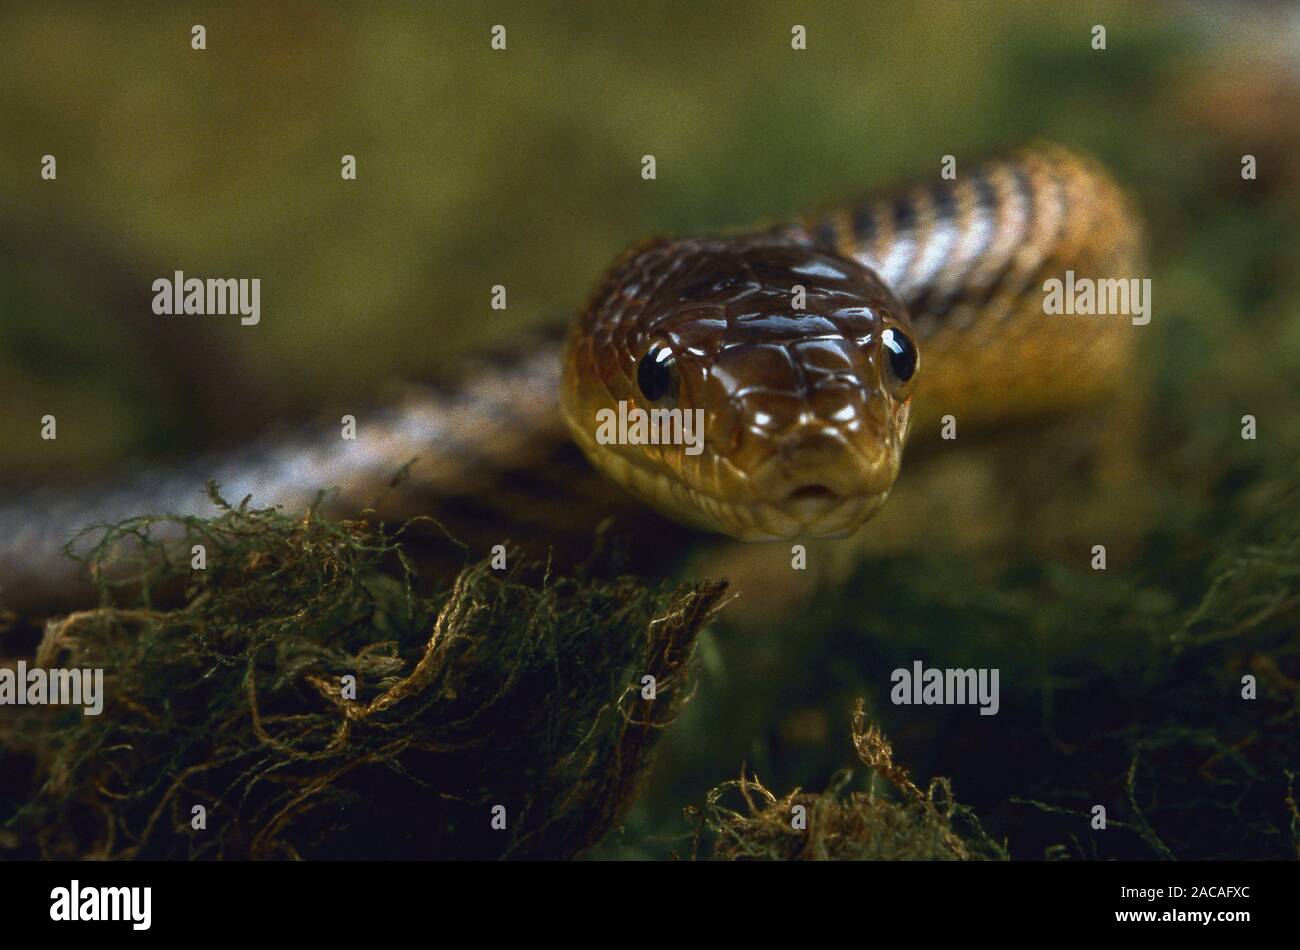 Bairds Kletternatter, Elaphe bairdi, Baird's rat snake, Baird's ratsnake, Baird's pilot snake Stock Photo